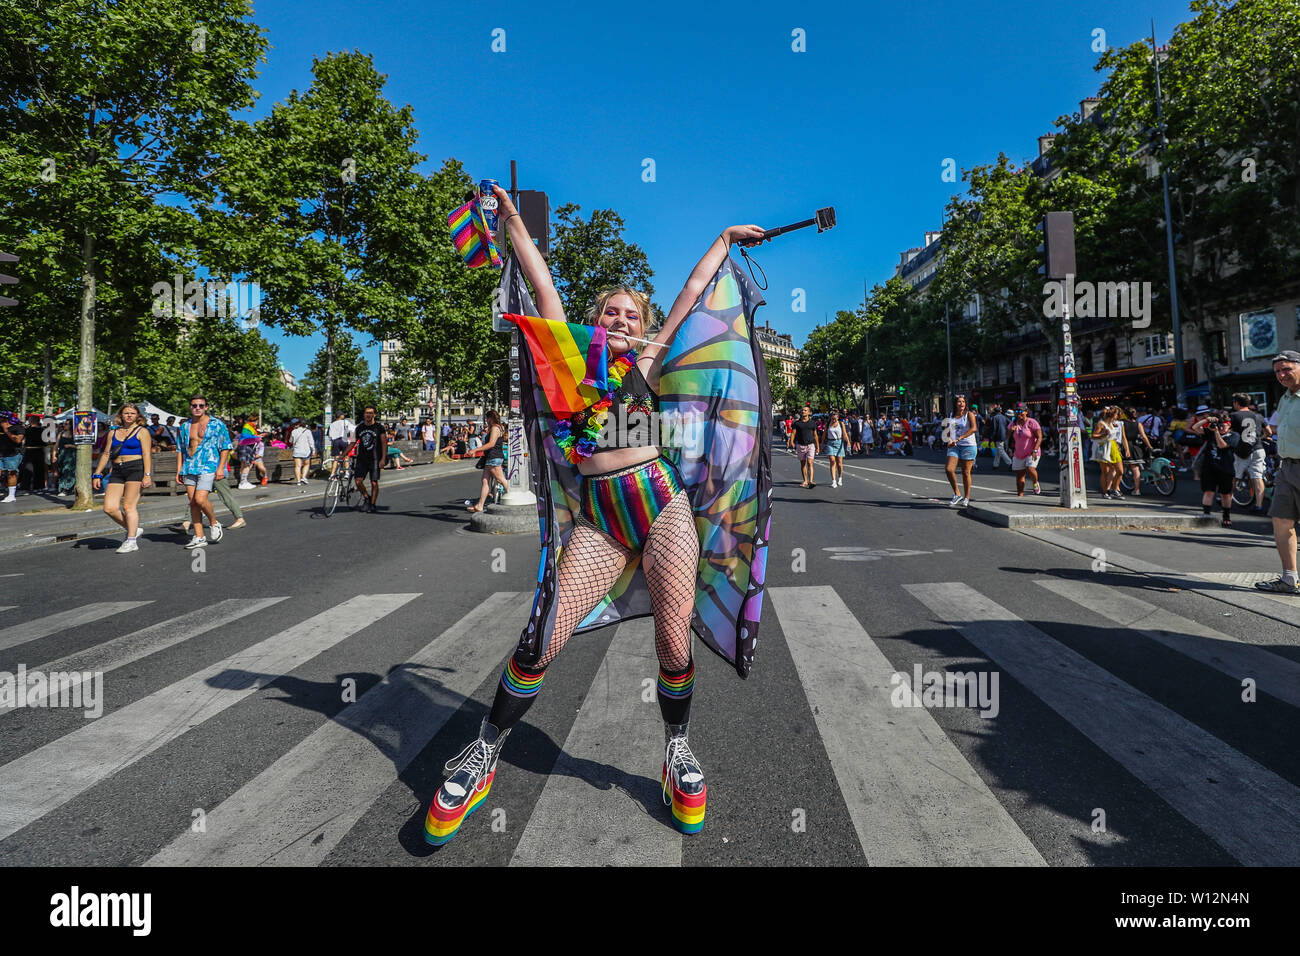 Paris, France. 29 Juin, 2019. Une foule massive de personnes en mars une gay pride le 29 juin 2019 à Paris, France. Brésil : Crédit Photo Presse/Alamy Live News Banque D'Images